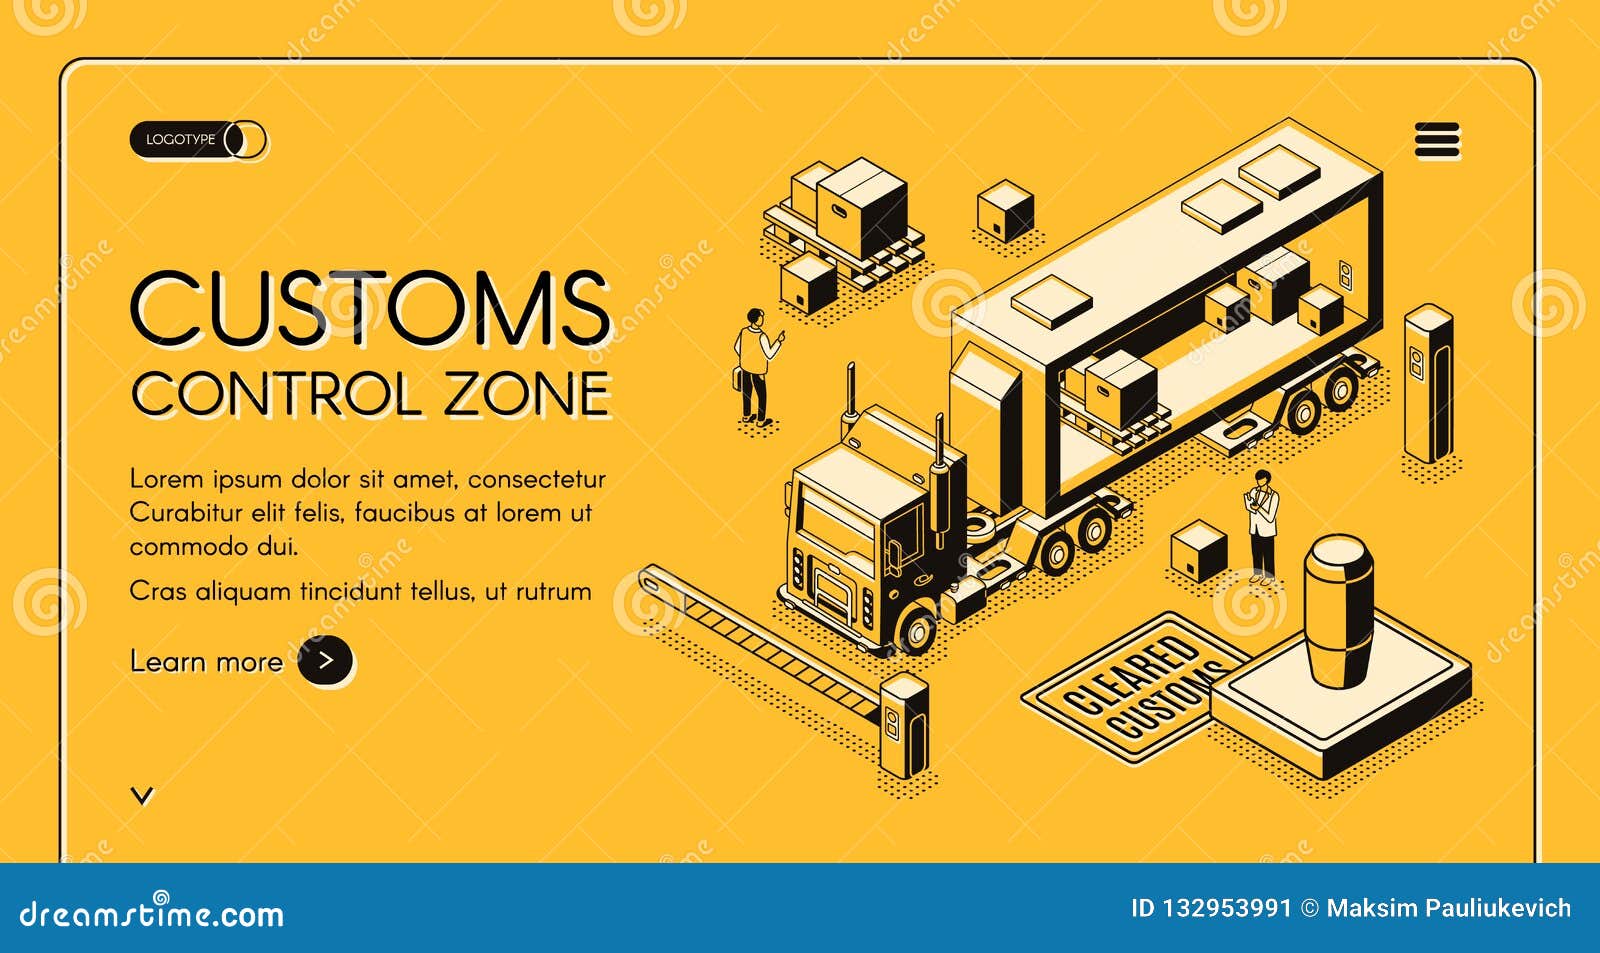 customs control zone isometric  website